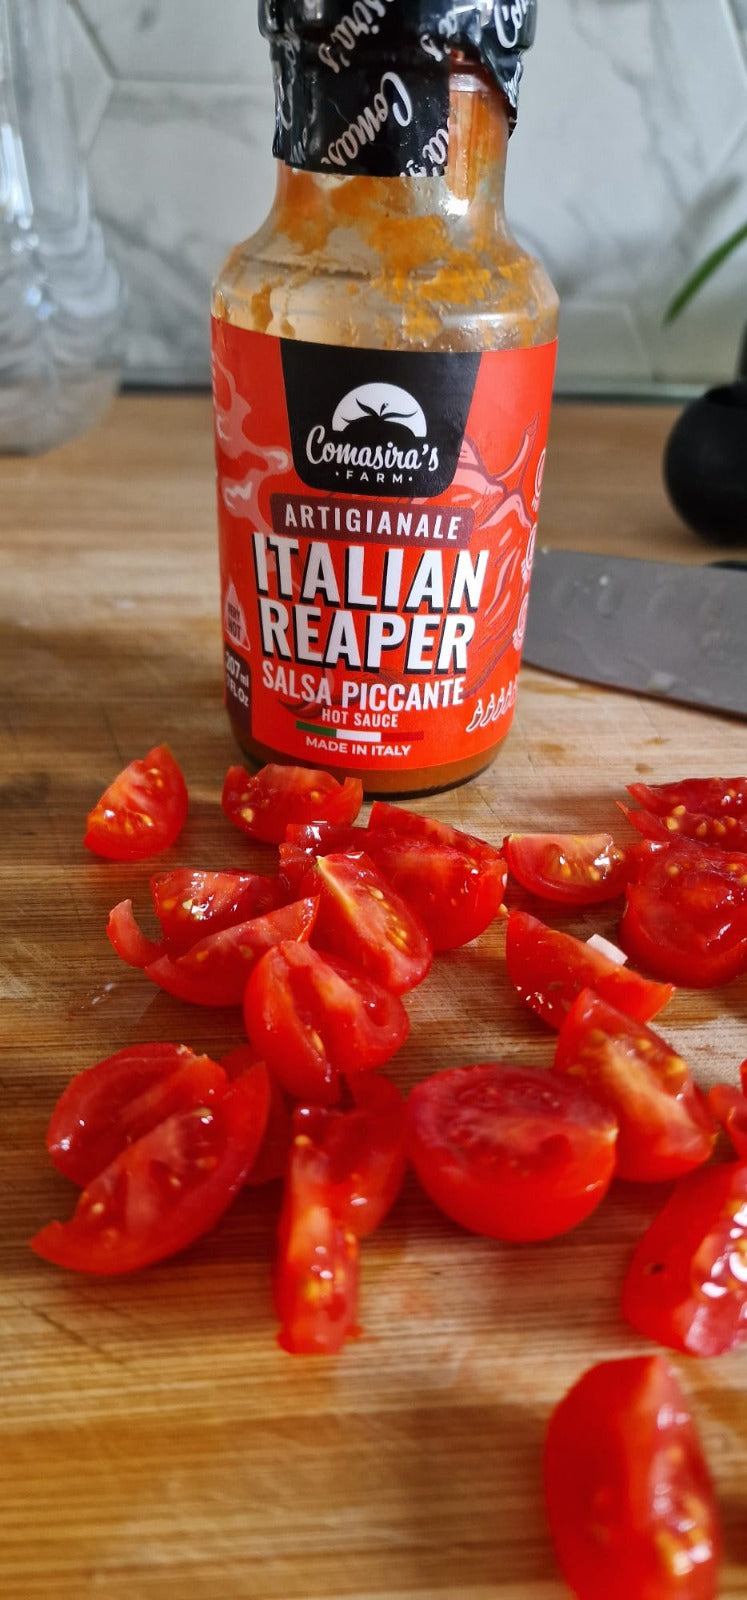 Comasira's, Salsa Piccante Italian Reaper